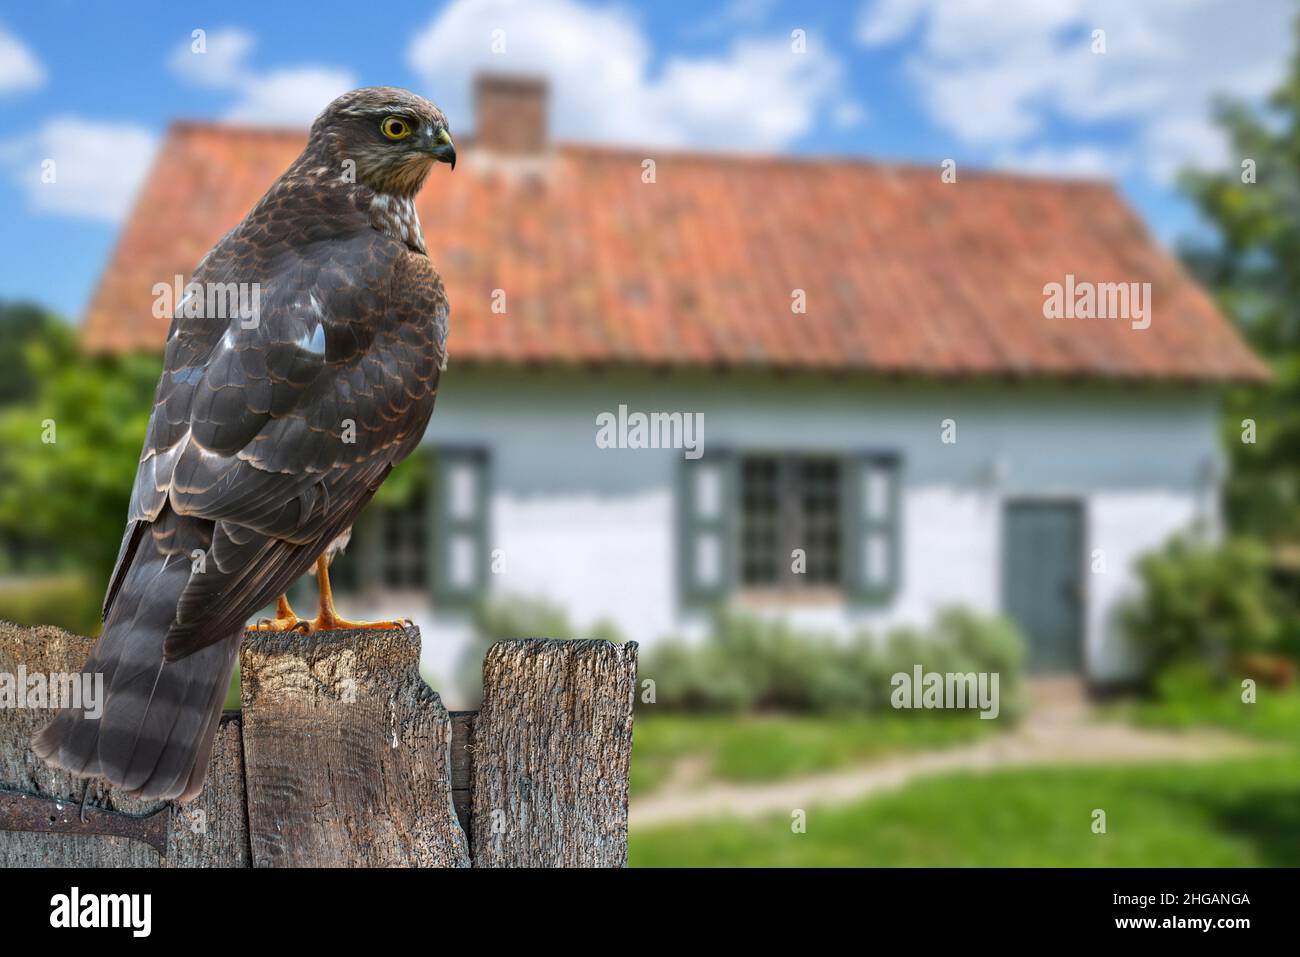 Sparrowhawk eurasien / sparrowhawk du nord (Accipiter nisus) perché sur une clôture en bois abîmé et à la recherche d'oiseaux de jardin à proies.Compo. Numérique Banque D'Images